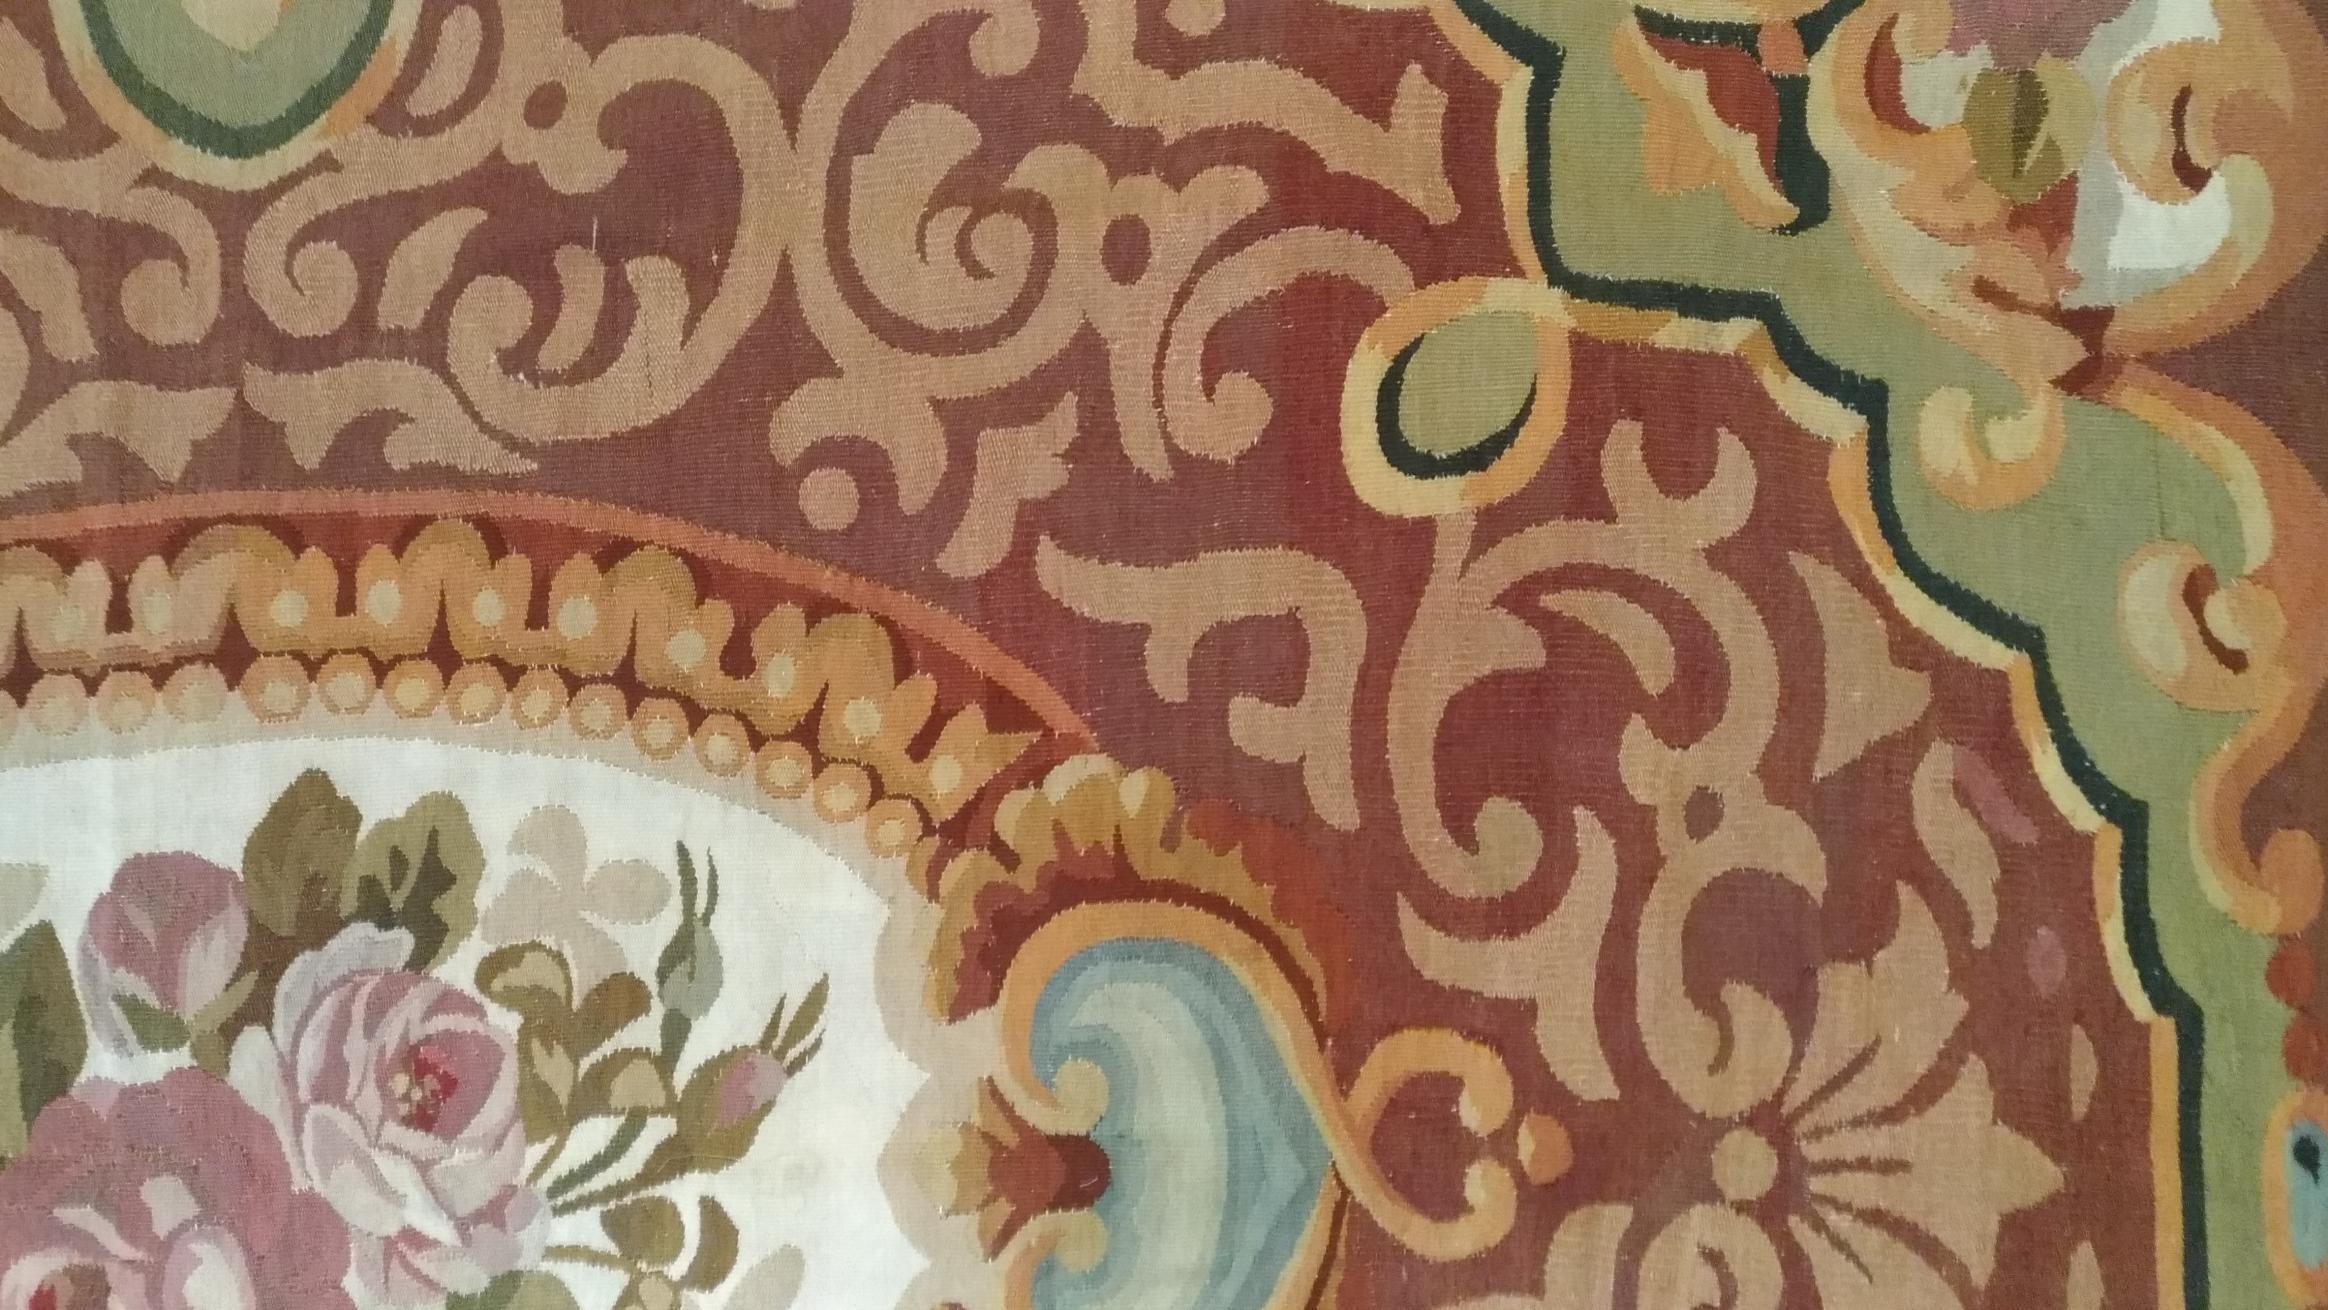 1071 - Très beau tapis français d'Aubusson du milieu du 19ème siècle avec un beau motif floral de style Empire, et un beau fond de couleur verte, caractéristique de ce style, avec du blanc et du marron, entièrement tissé à la main avec de la laine.